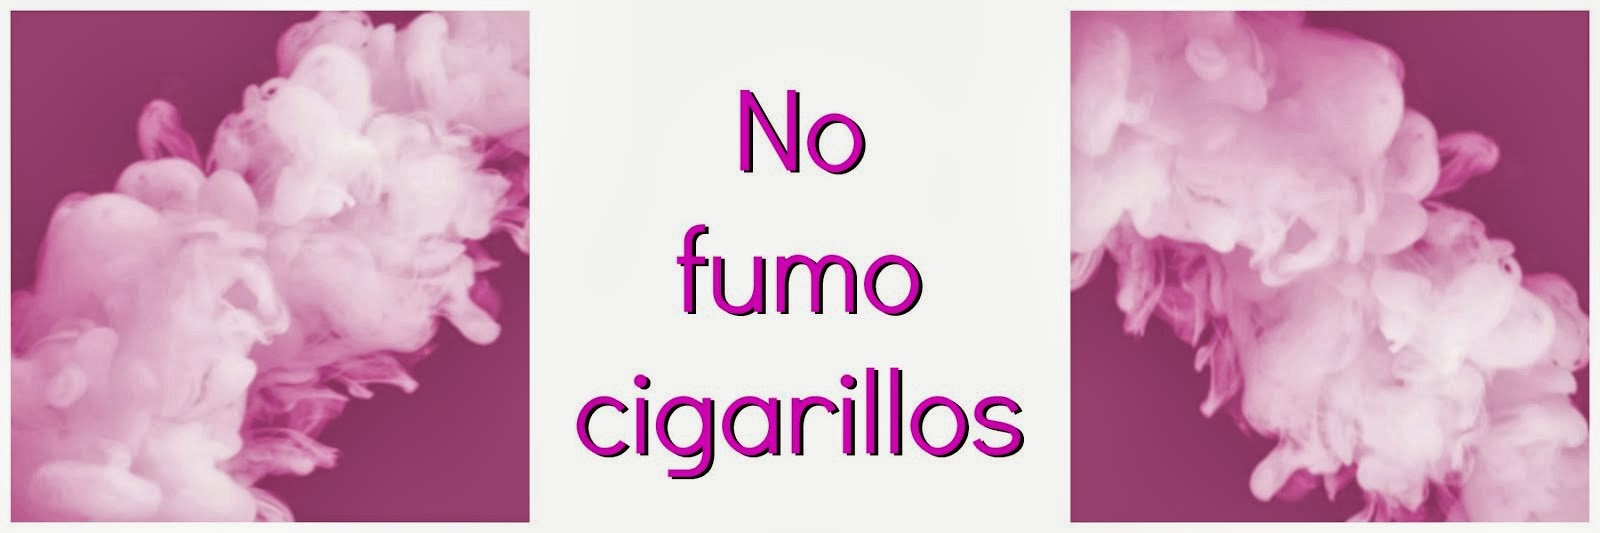 No fumo cigarillos